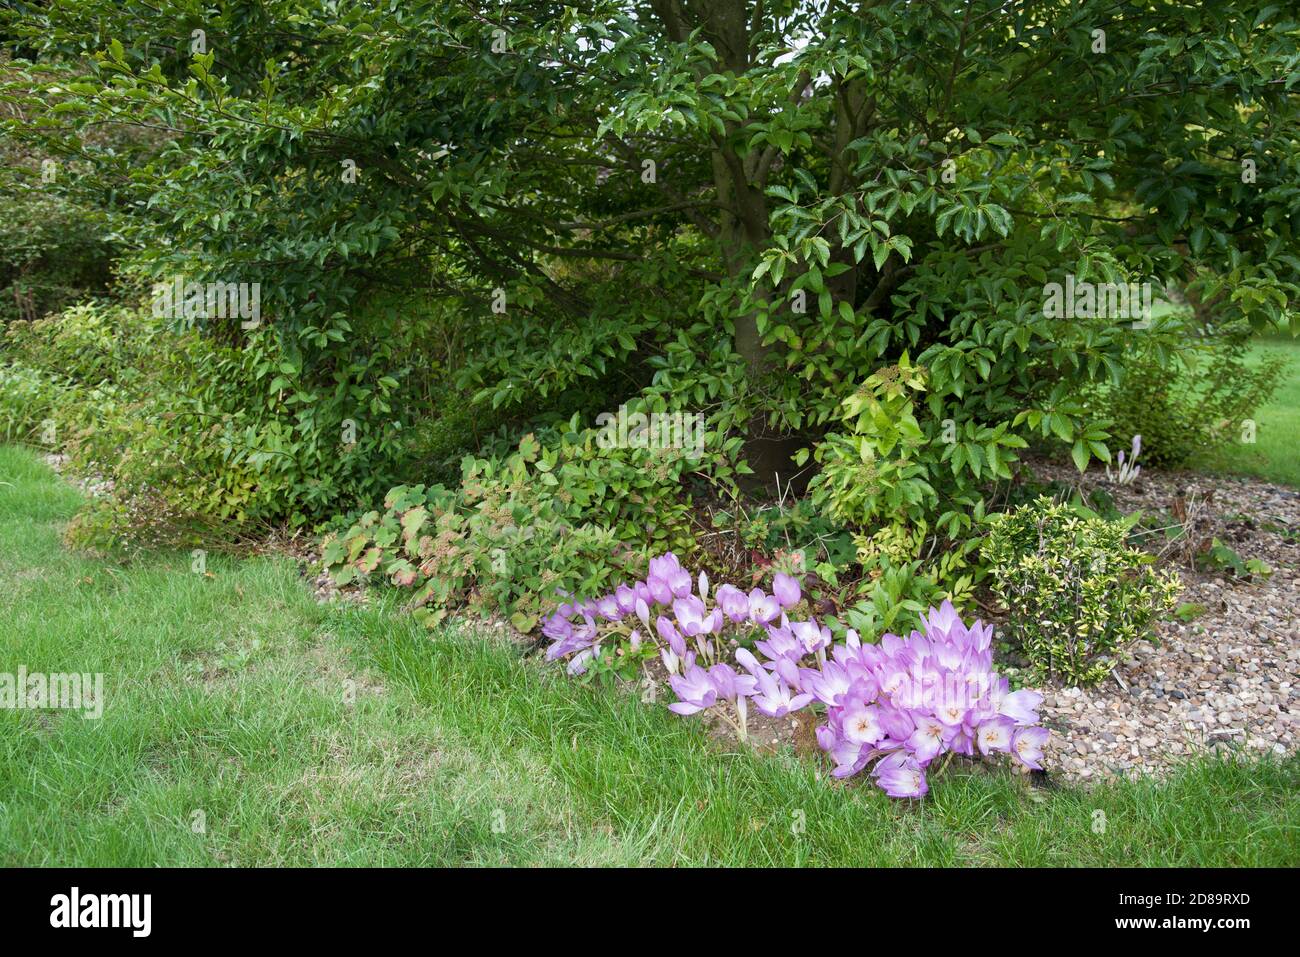 Autumn crocus (Colchicum autumnale) Stock Photo